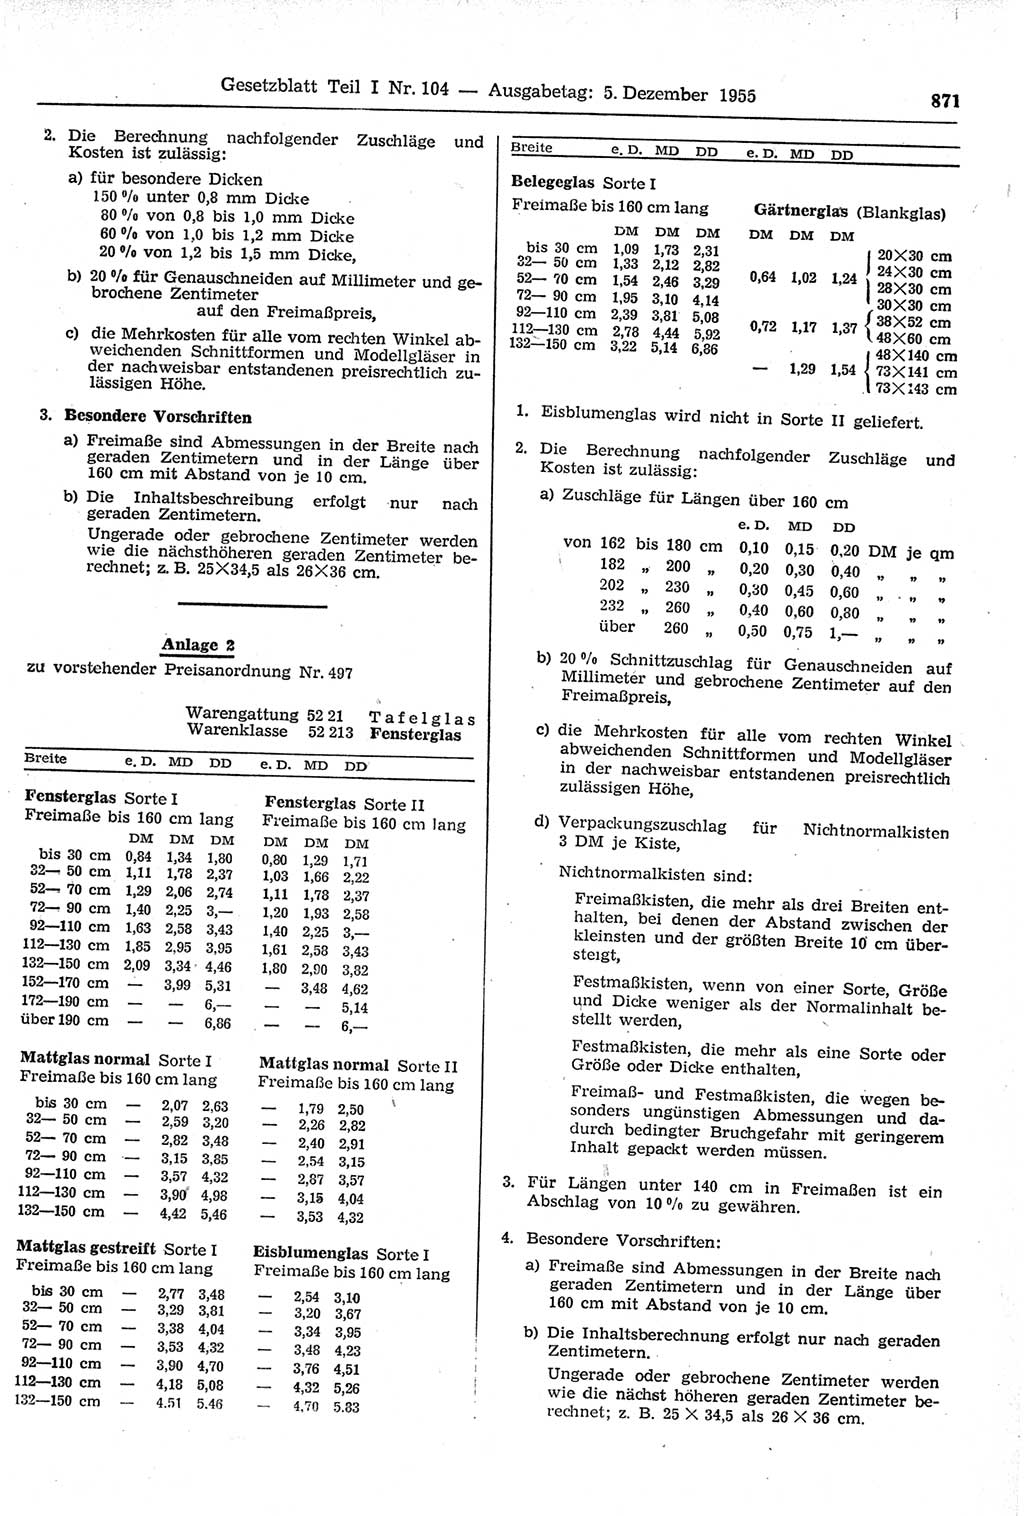 Gesetzblatt (GBl.) der Deutschen Demokratischen Republik (DDR) Teil Ⅰ 1955, Seite 871 (GBl. DDR Ⅰ 1955, S. 871)